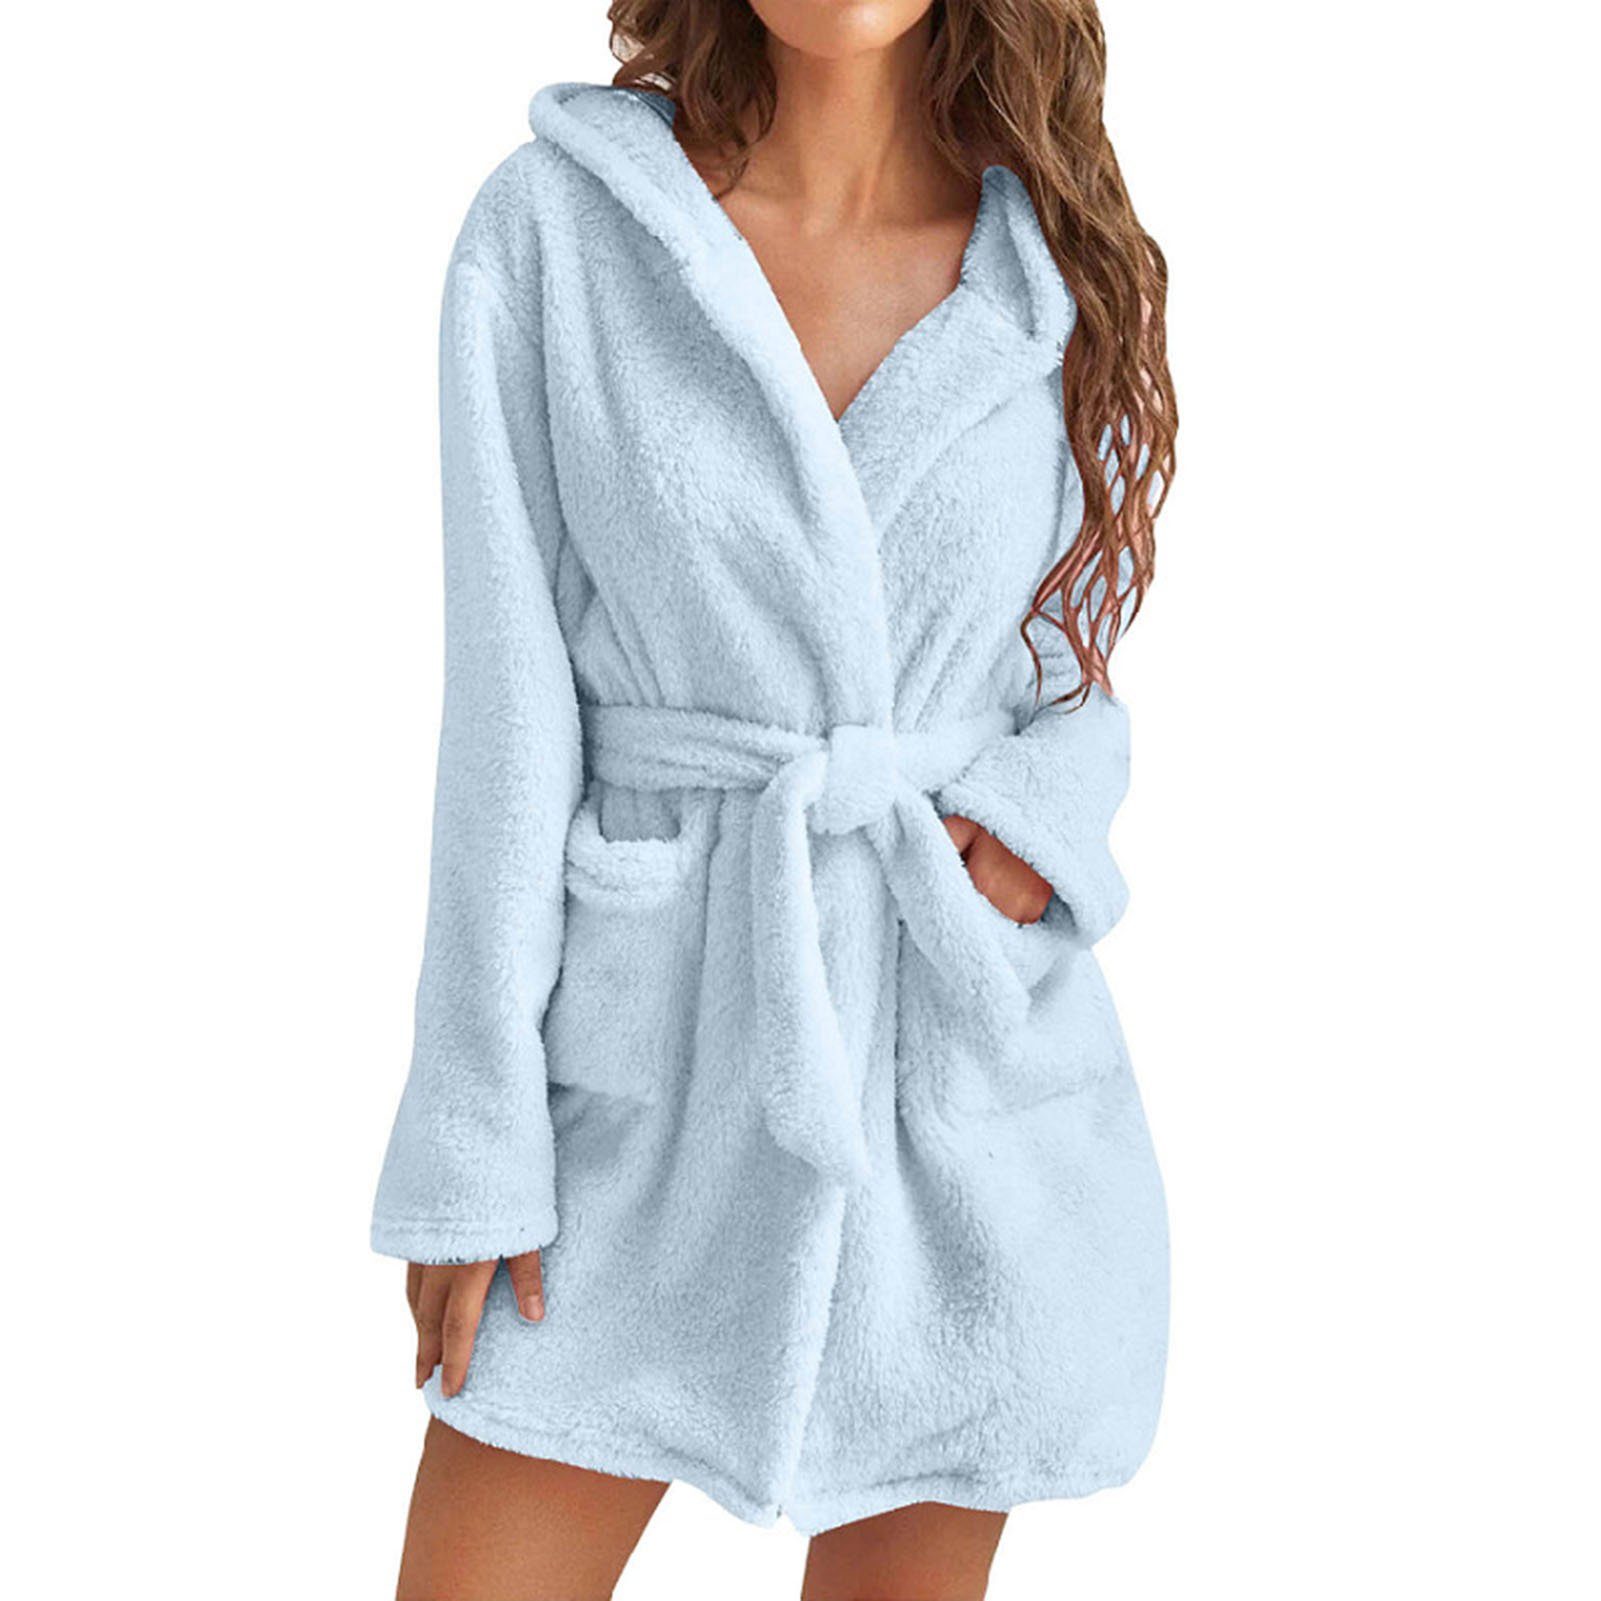 Taschen, Damen-Handtuch-Bademantel Bequem, Atmungsaktiv, Für Blusmart sky Damenbademantel 2 Mit blue